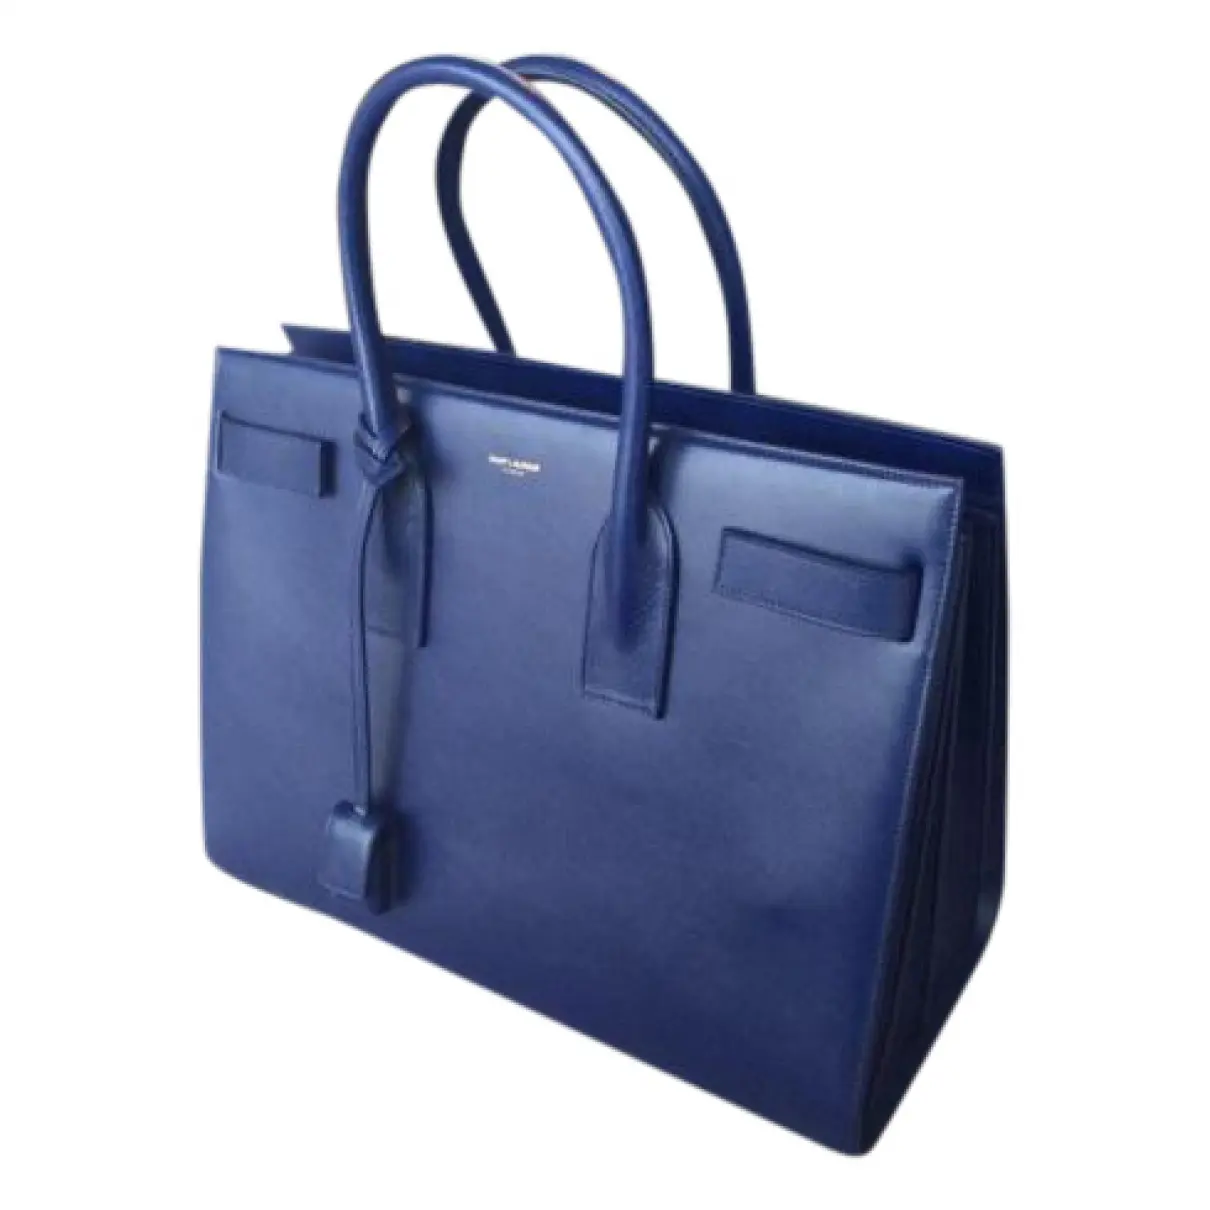 Blue Leather Handbag Sac de Jour Saint Laurent